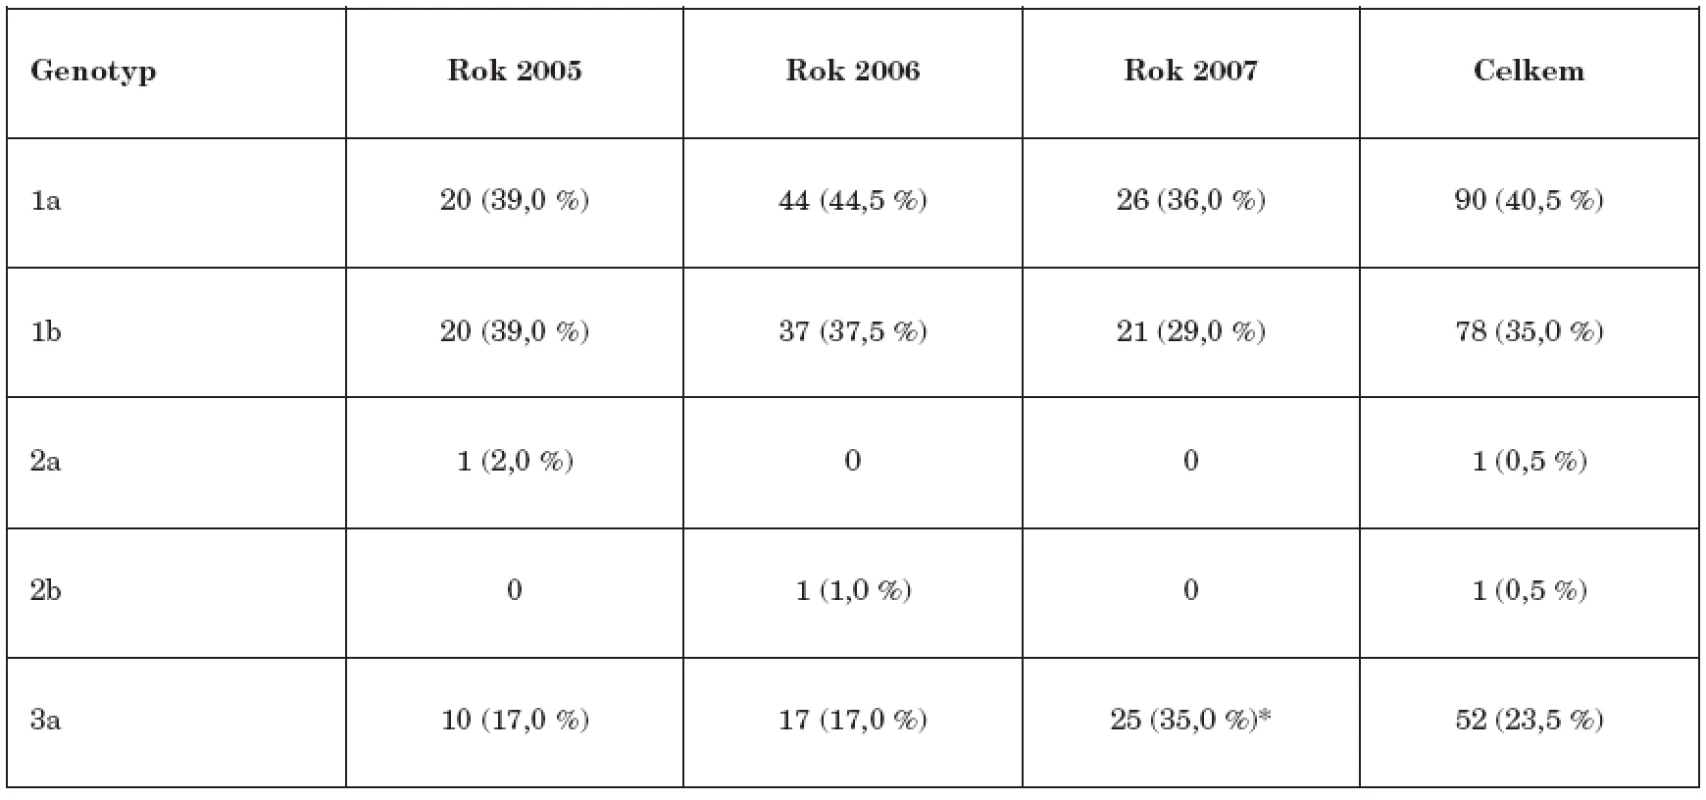 Přehled zastoupení jednotlivých genotypů a subtypů HCV (2005-2007)
Table 2. Distribution of HCV genotypes and subtypes, 2005-2007